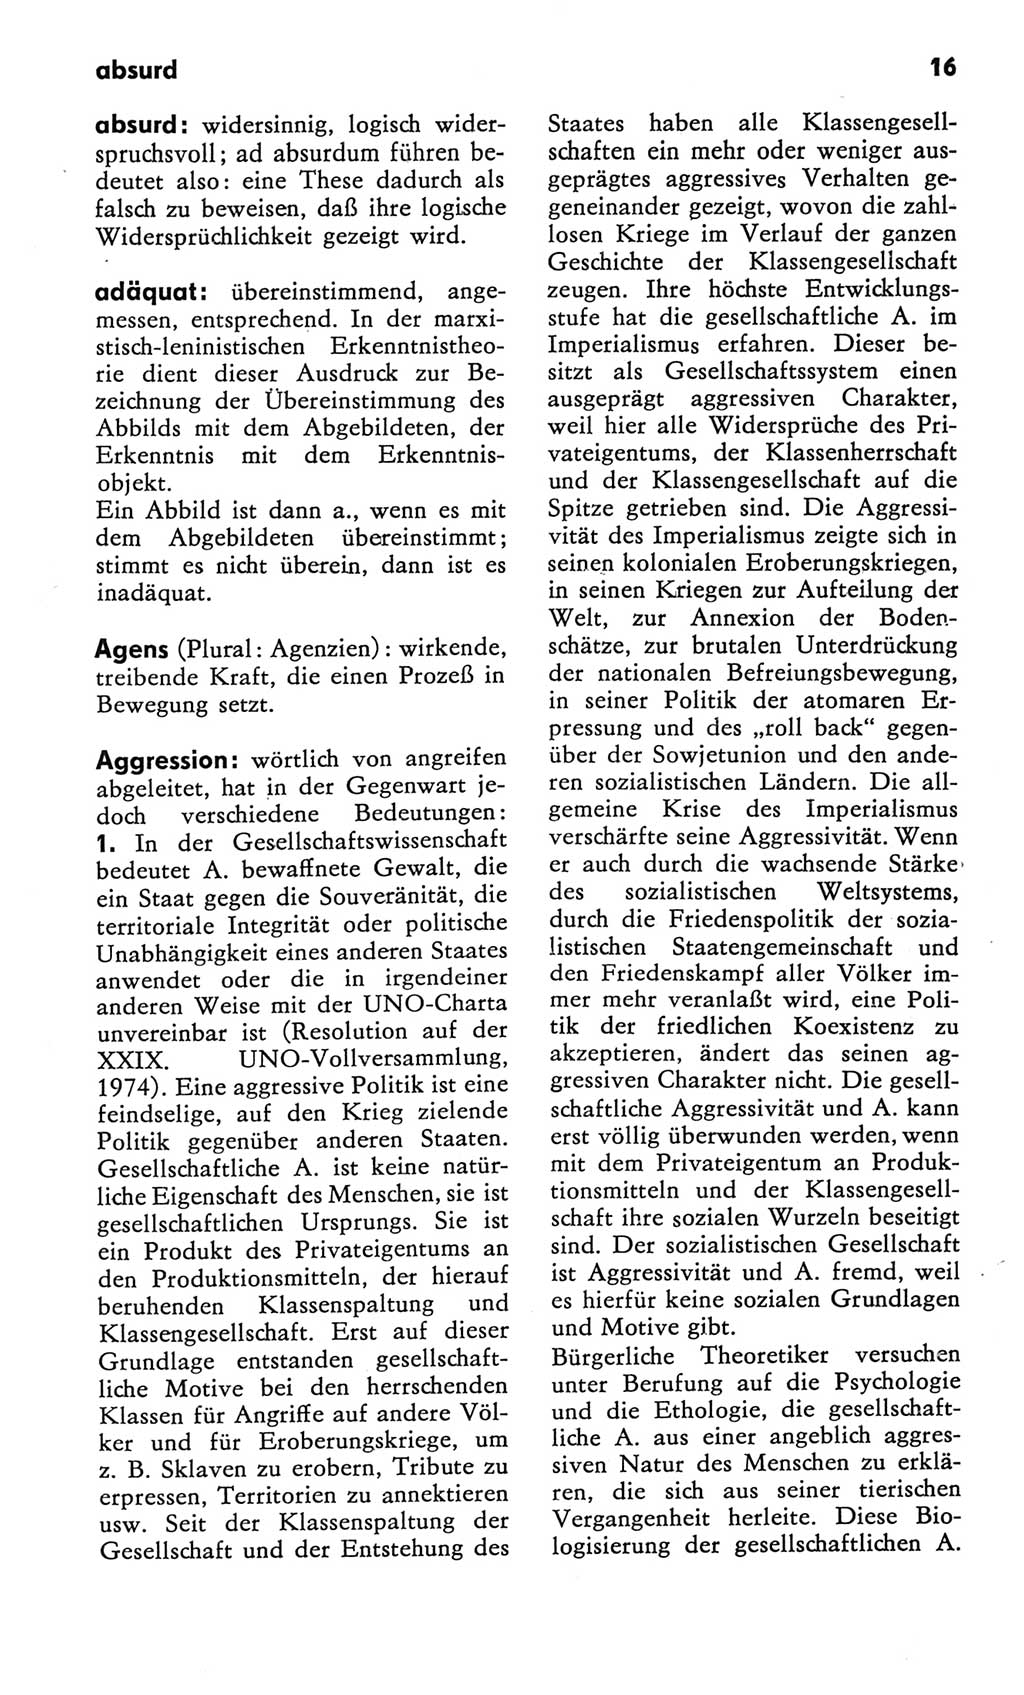 Kleines Wörterbuch der marxistisch-leninistischen Philosophie [Deutsche Demokratische Republik (DDR)] 1982, Seite 16 (Kl. Wb. ML Phil. DDR 1982, S. 16)